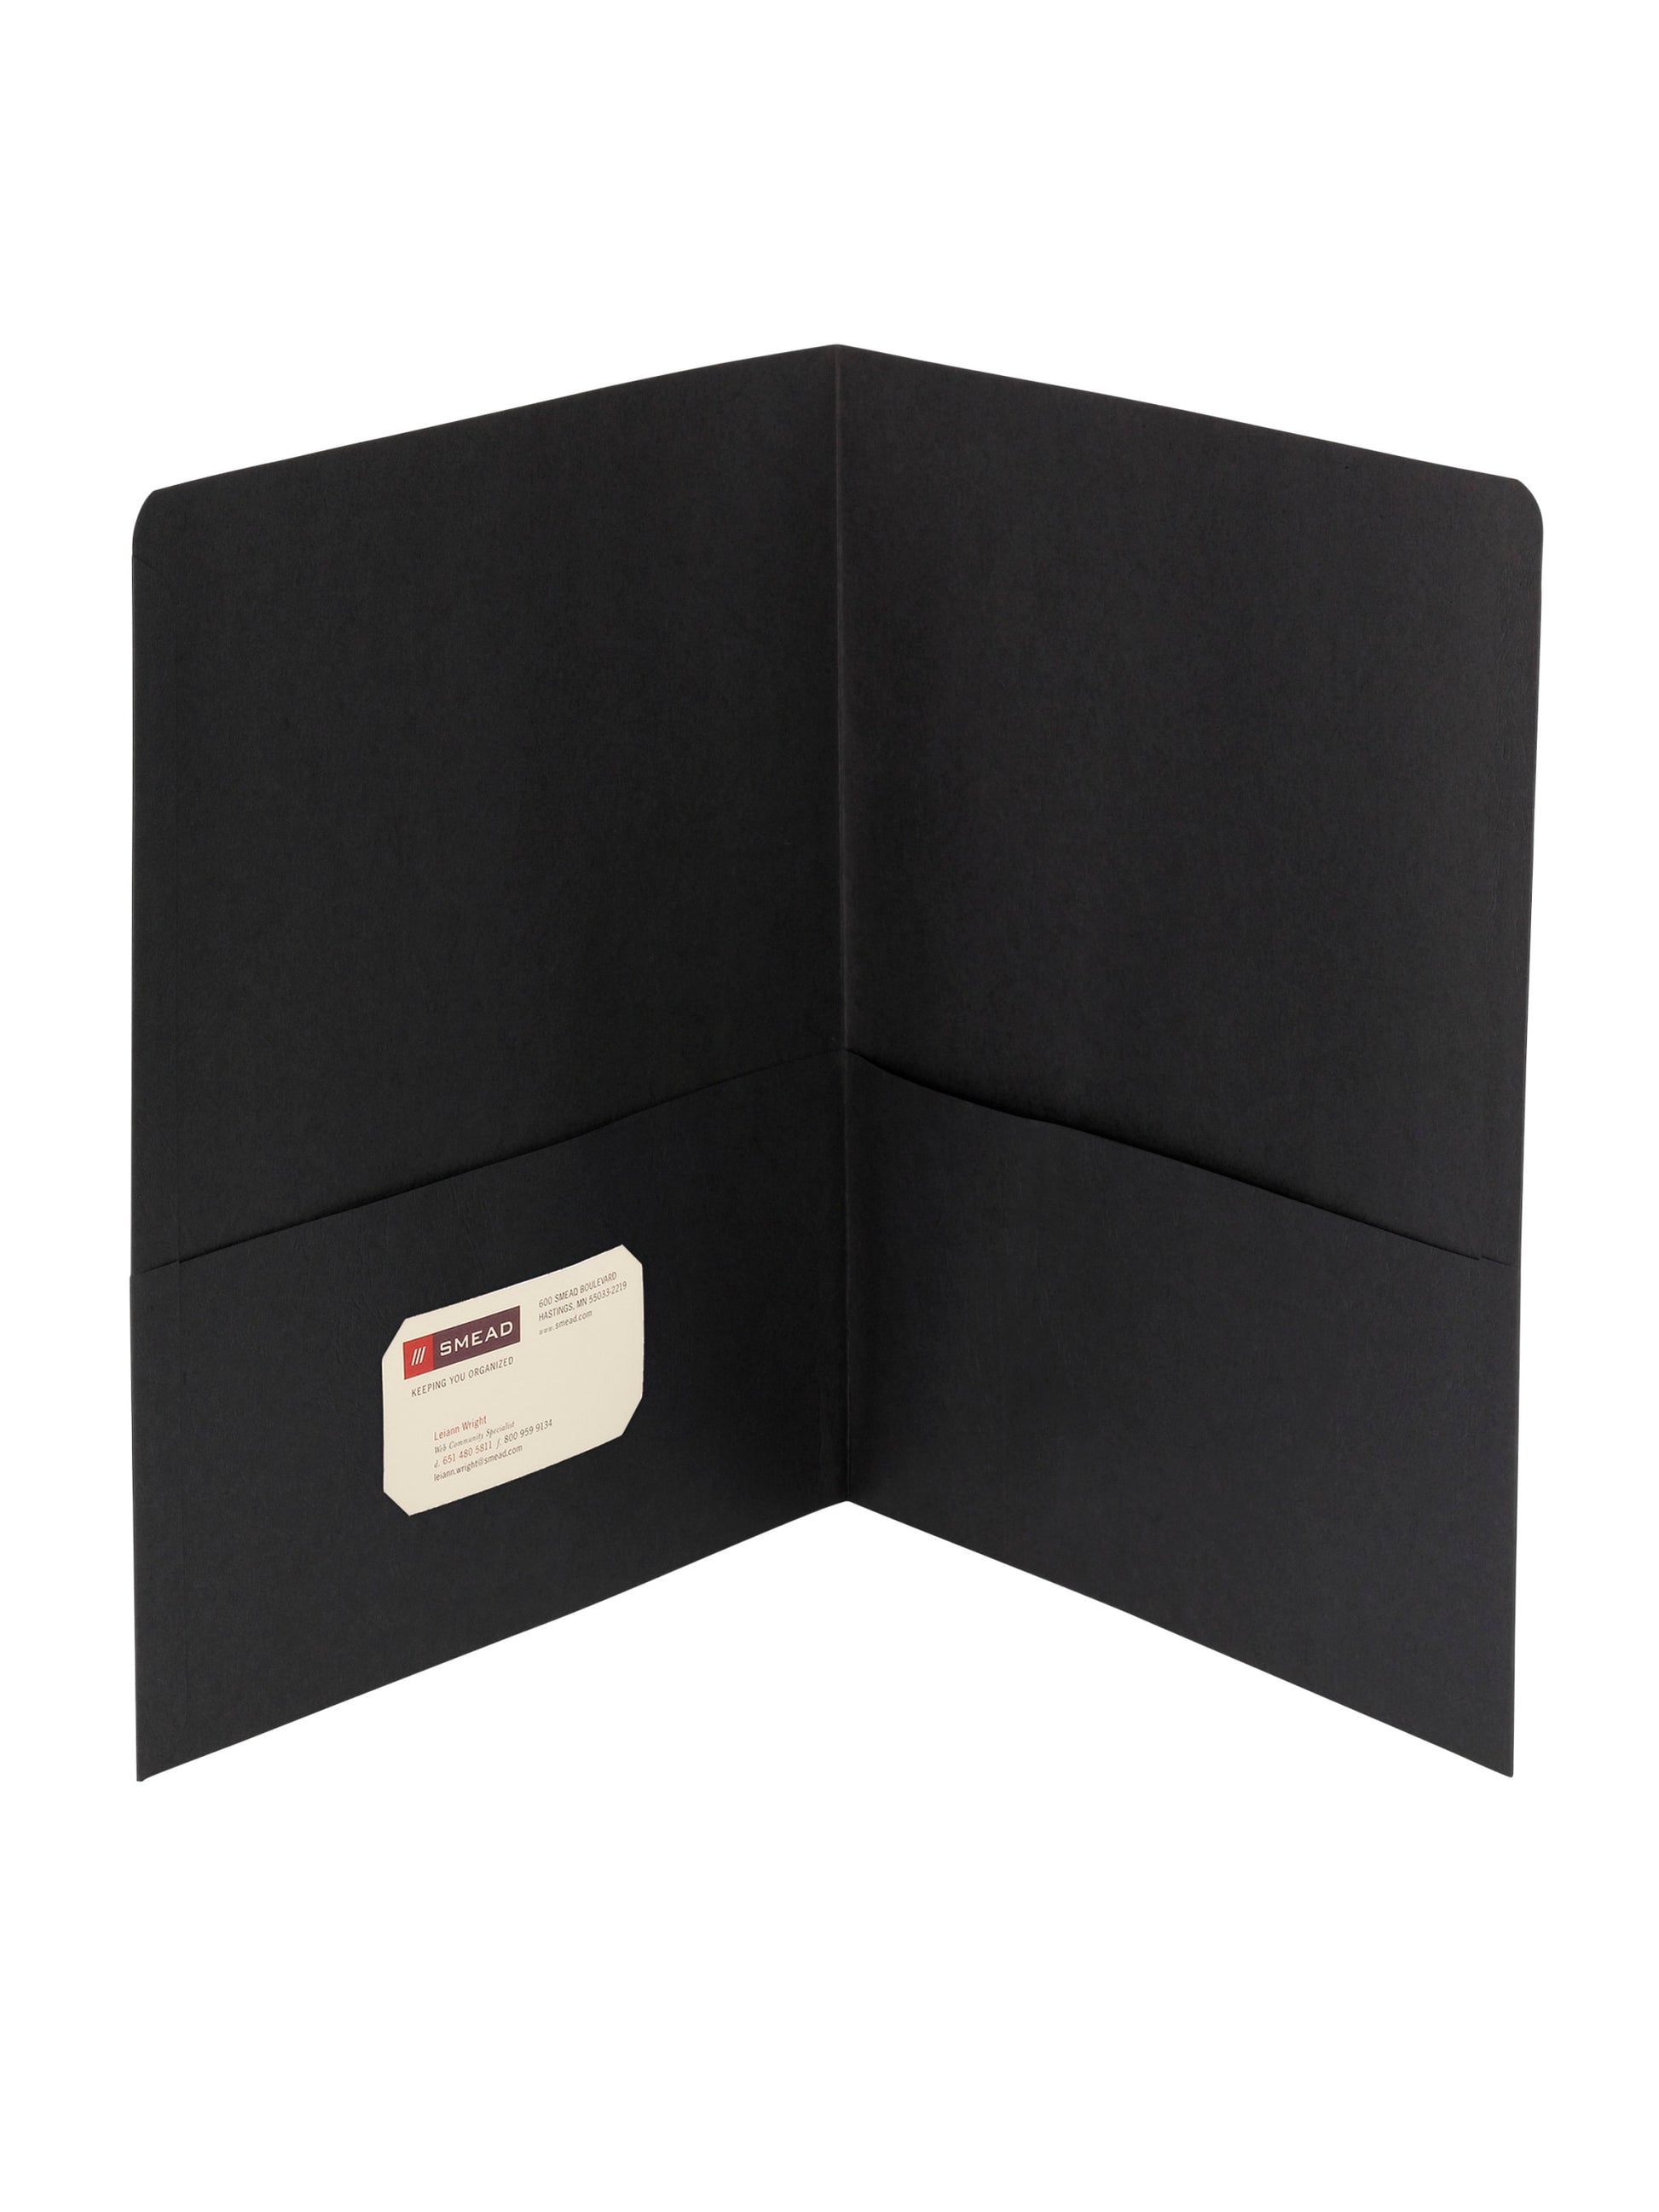 Standard Two-Pocket Folders, Black Color, Letter Size, Set of 0, 30086486878532